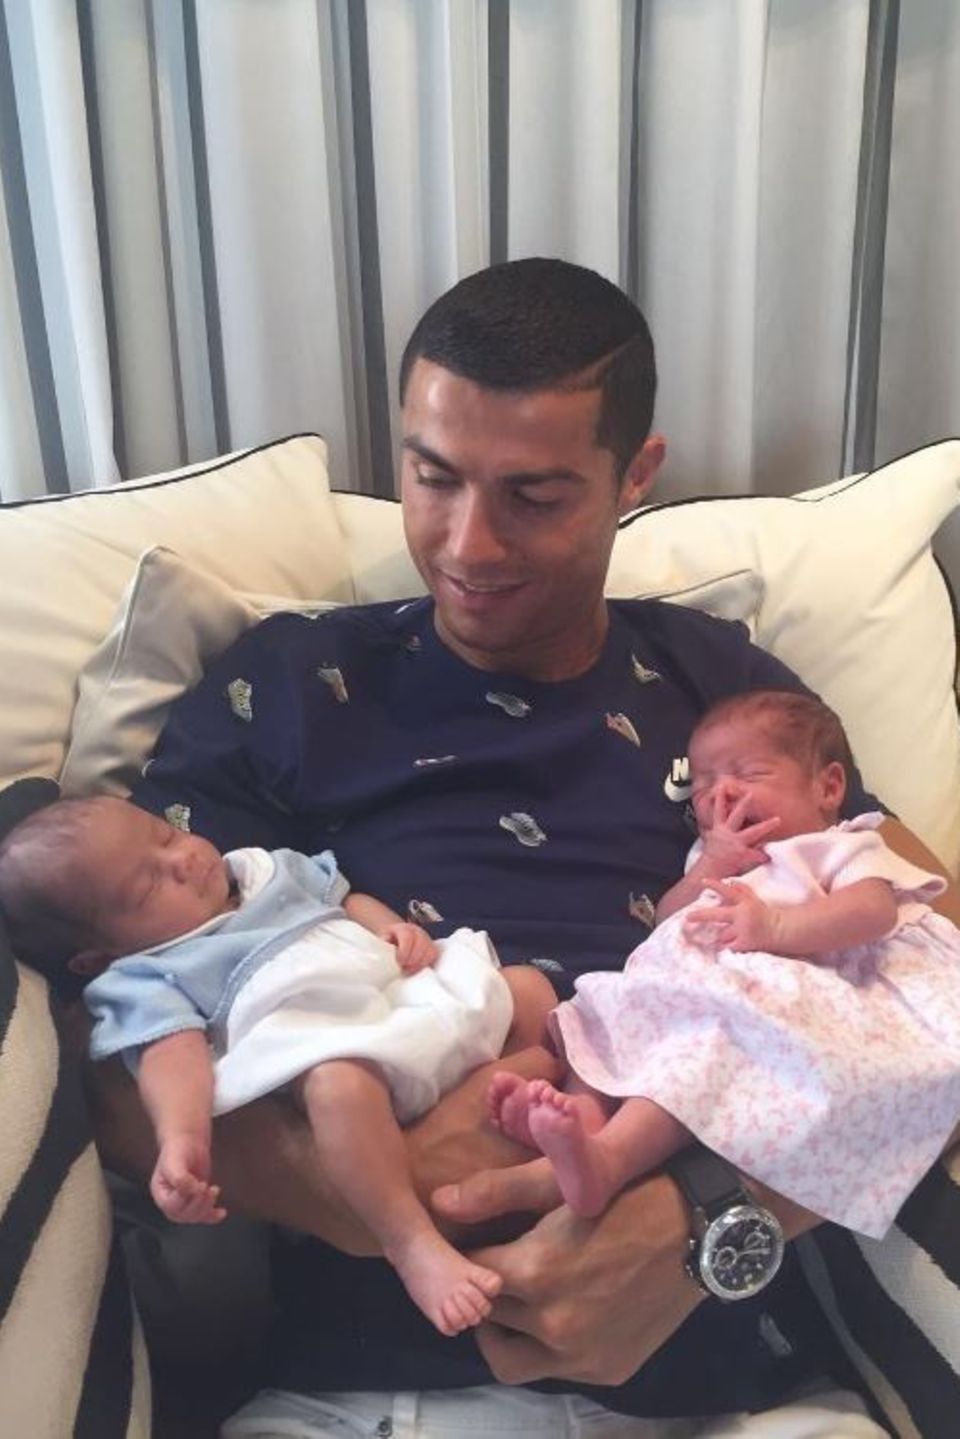 29. Juni 2017   Endlich kann Superstar Cristiano Ronaldo seine Zwilllinge in die Arme schließen. "So glücklich, die beiden neuen Lieben meines Lebens halten zu können", postet der Fußballer.